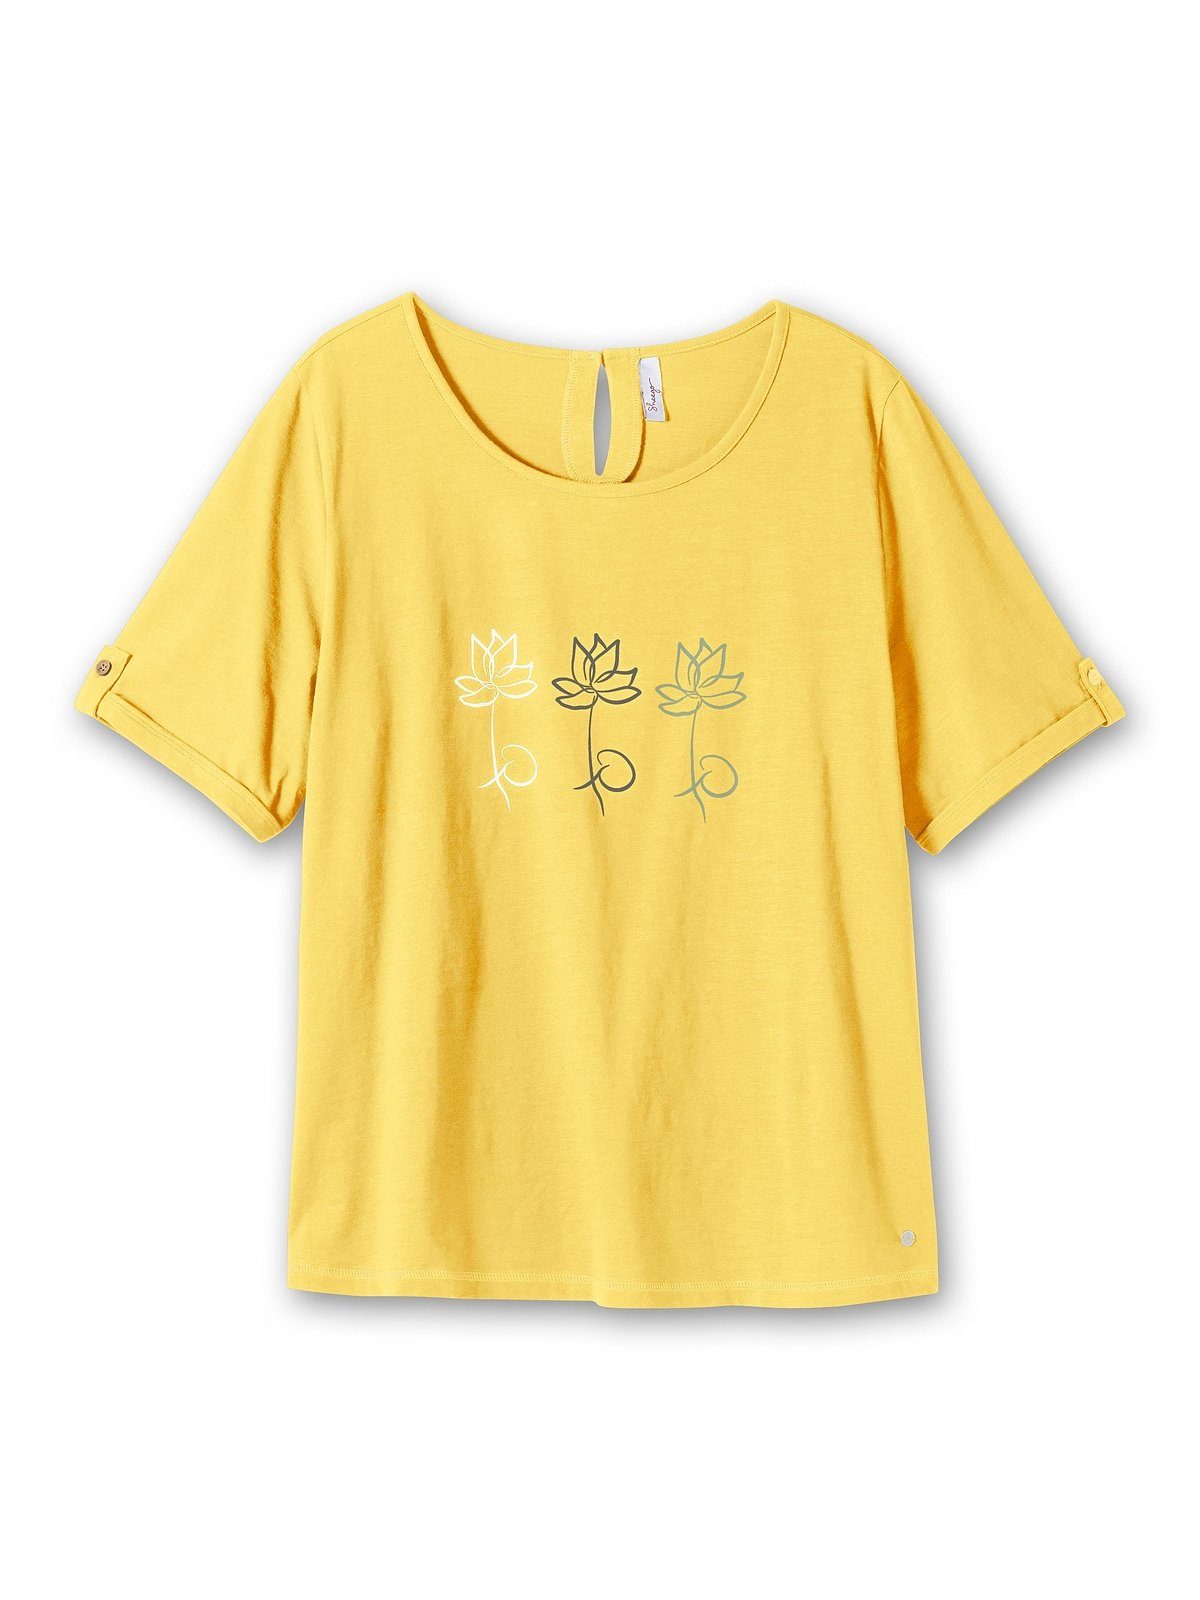 gelb T-Shirt aus Sheego Größen Blumen-Frontprint, mit Große Baumwolle